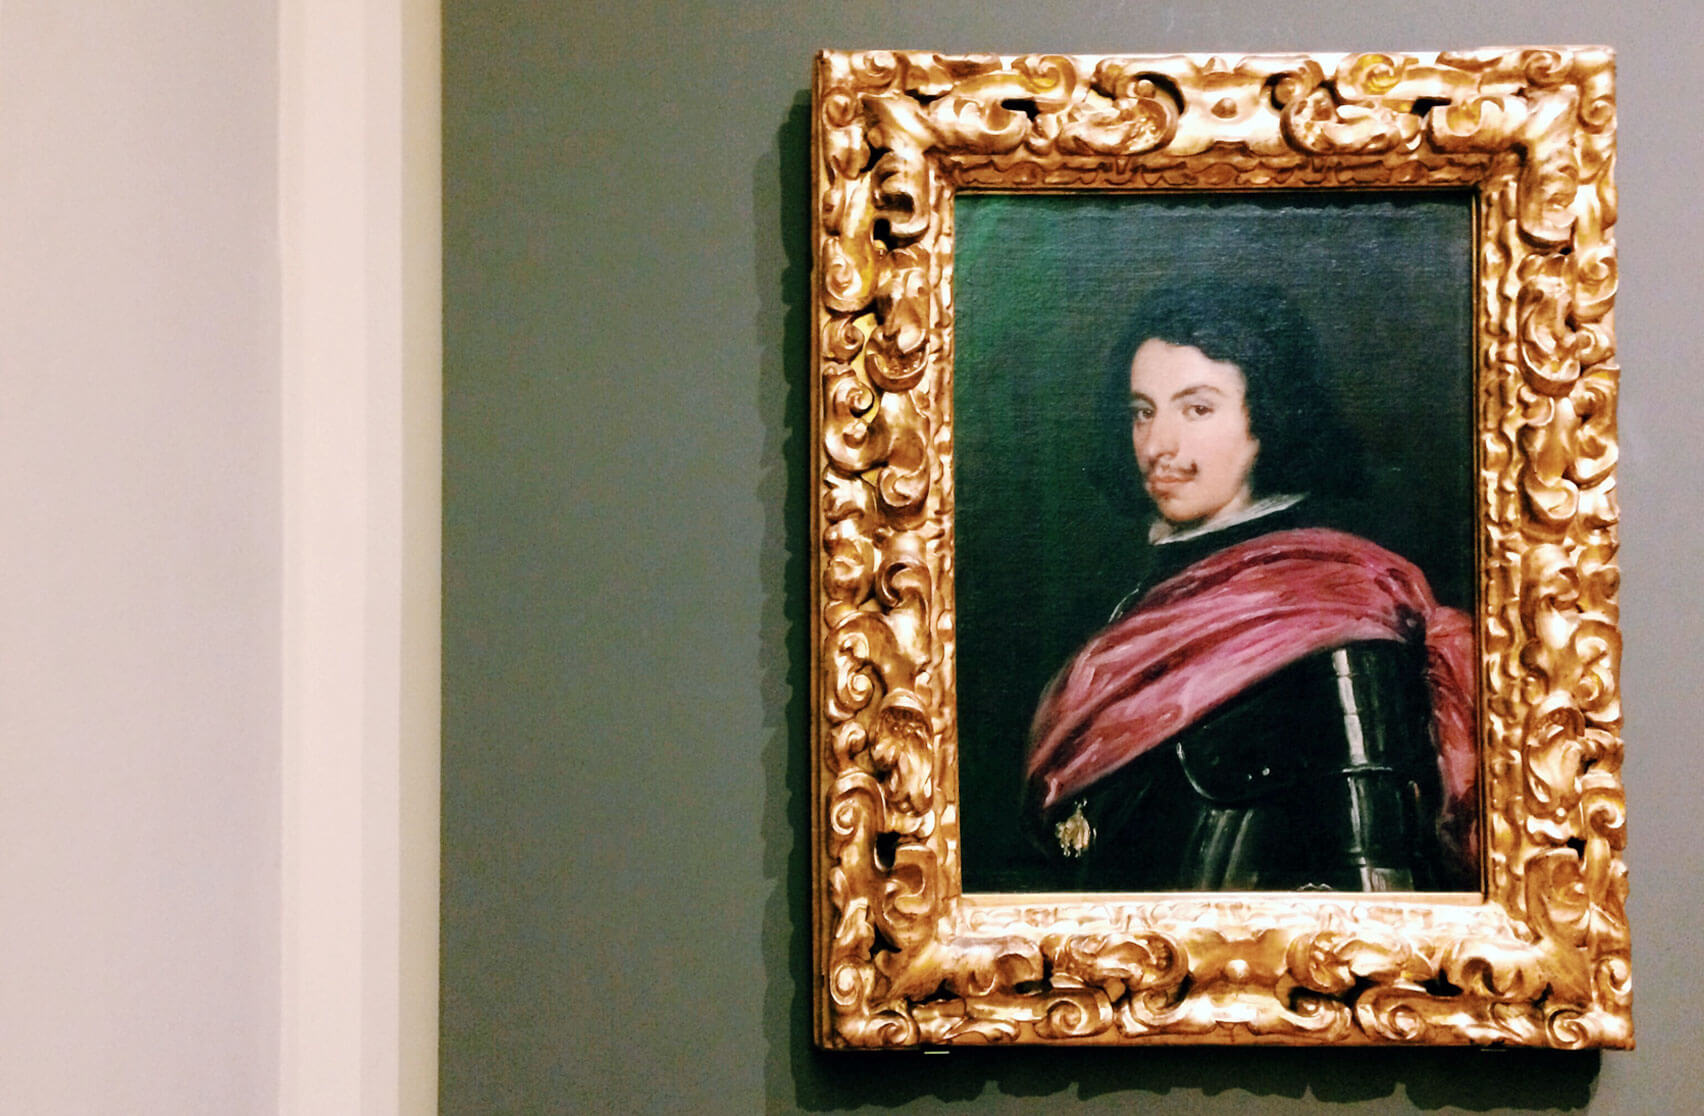 Estense Gallery - Portrait of Francesco I d'Este by Velazquez